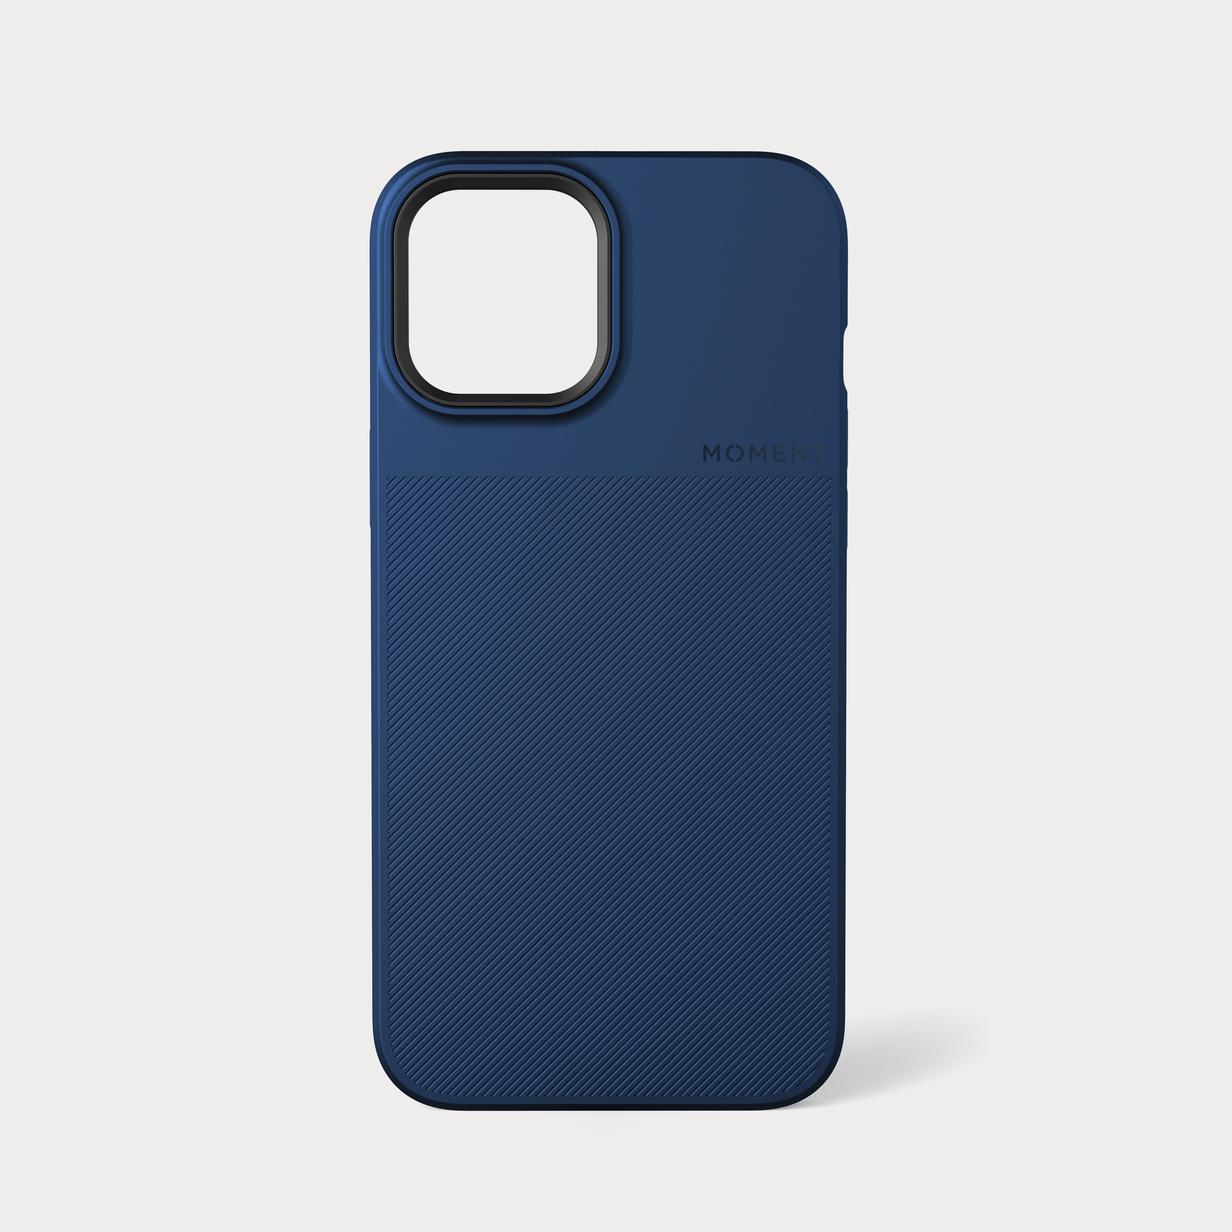 311 138 Moment i Phone12 Pro Max Thin Case Indigo Blue 1 back